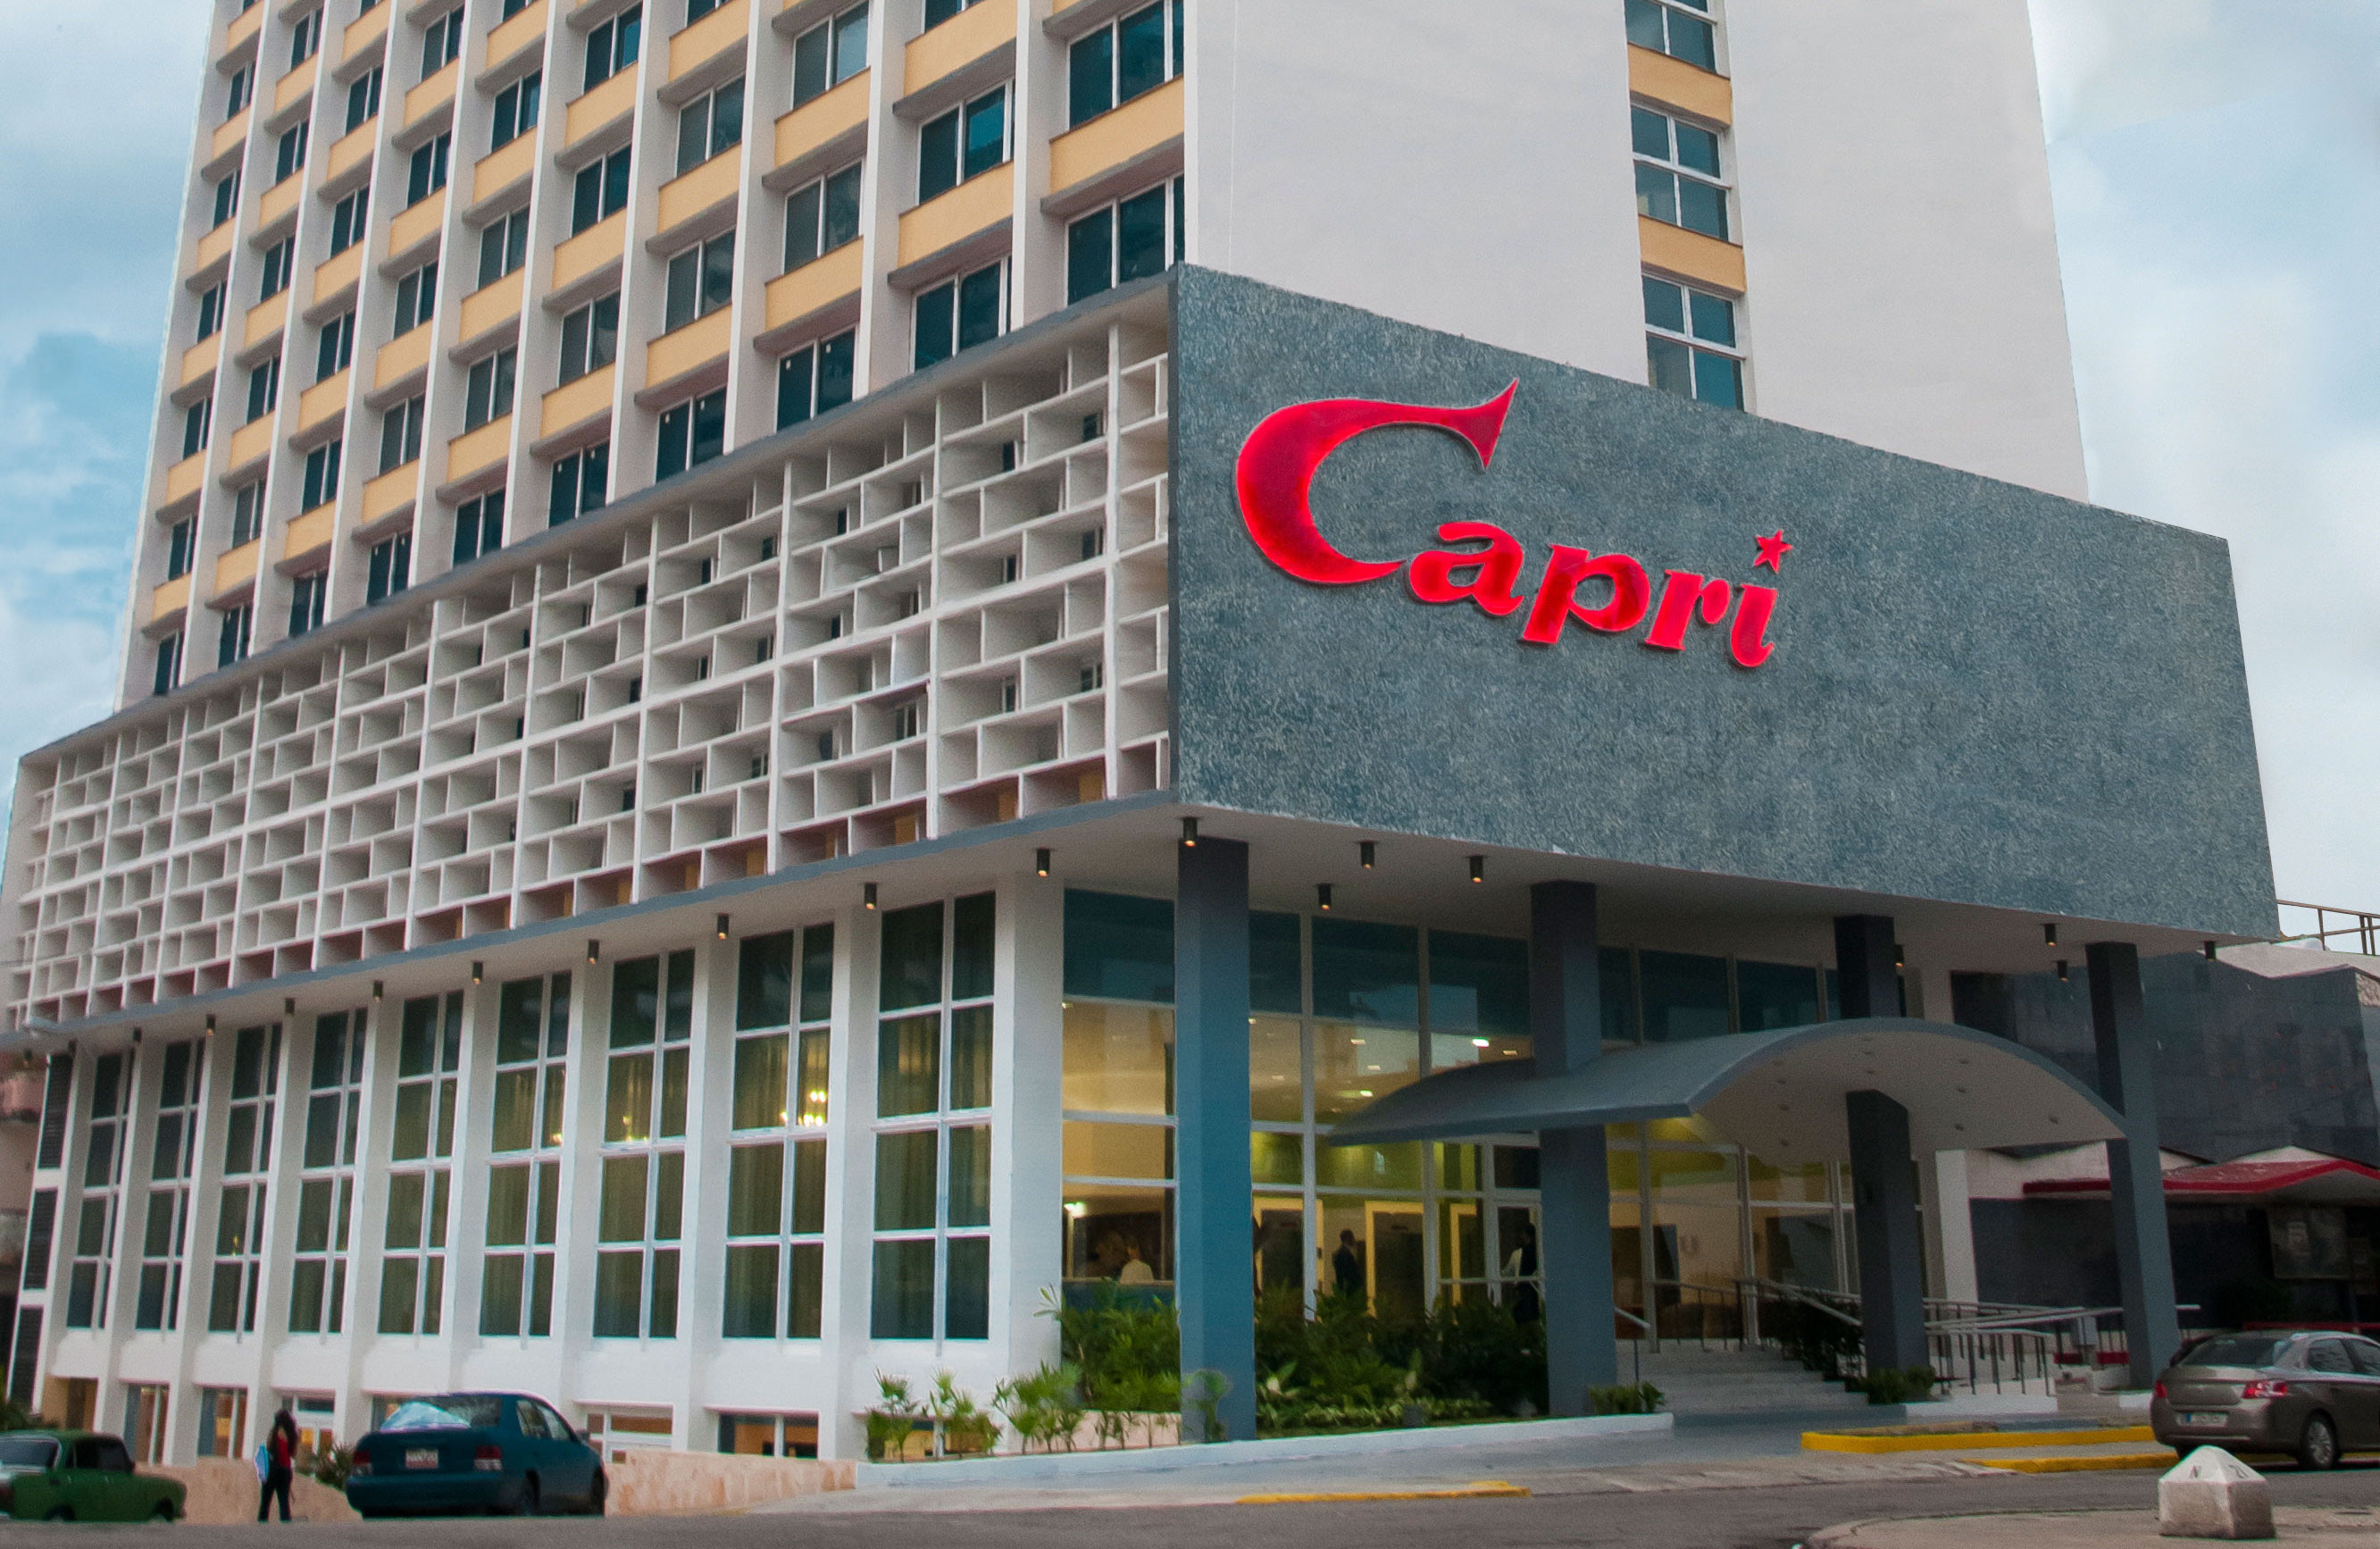 Отель Capri в Гаване. Фото:&nbsp;Transat.com